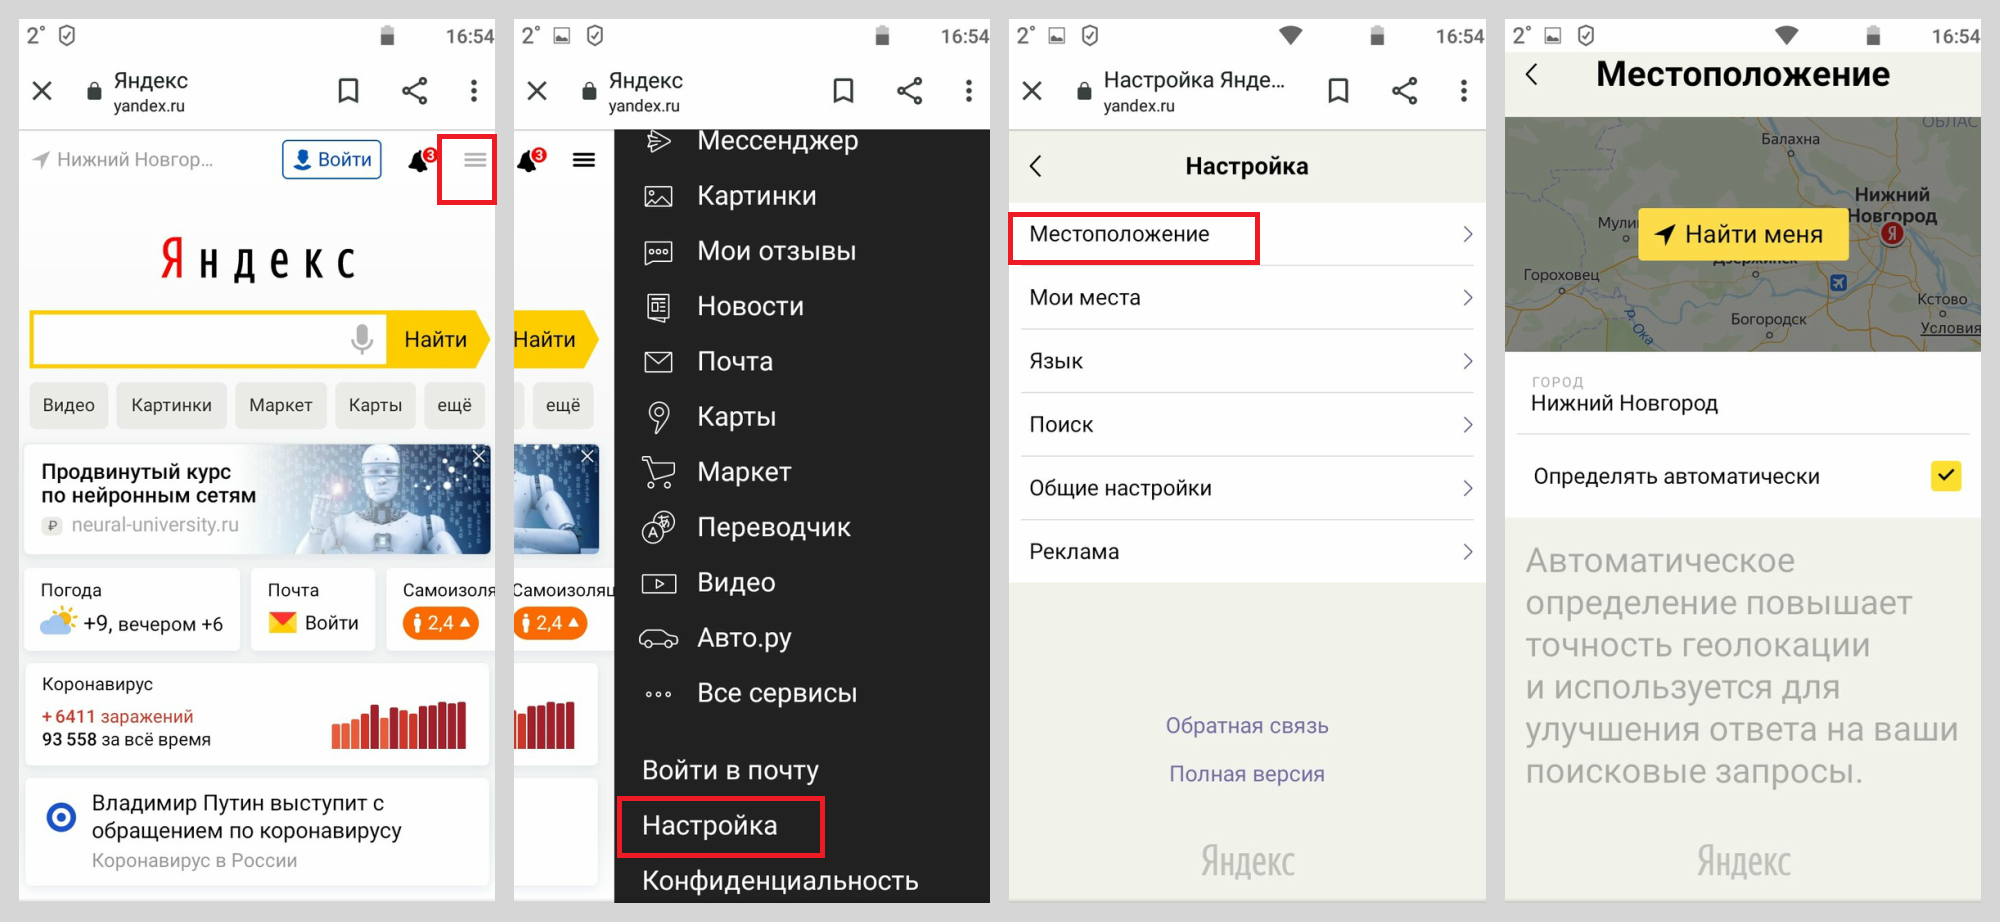 Версия браузера на моем телефоне. Изменить город в Яндексе на телефоне. Изменить местоположение в Яндексе на телефоне. Как поменять город в Яндексе.